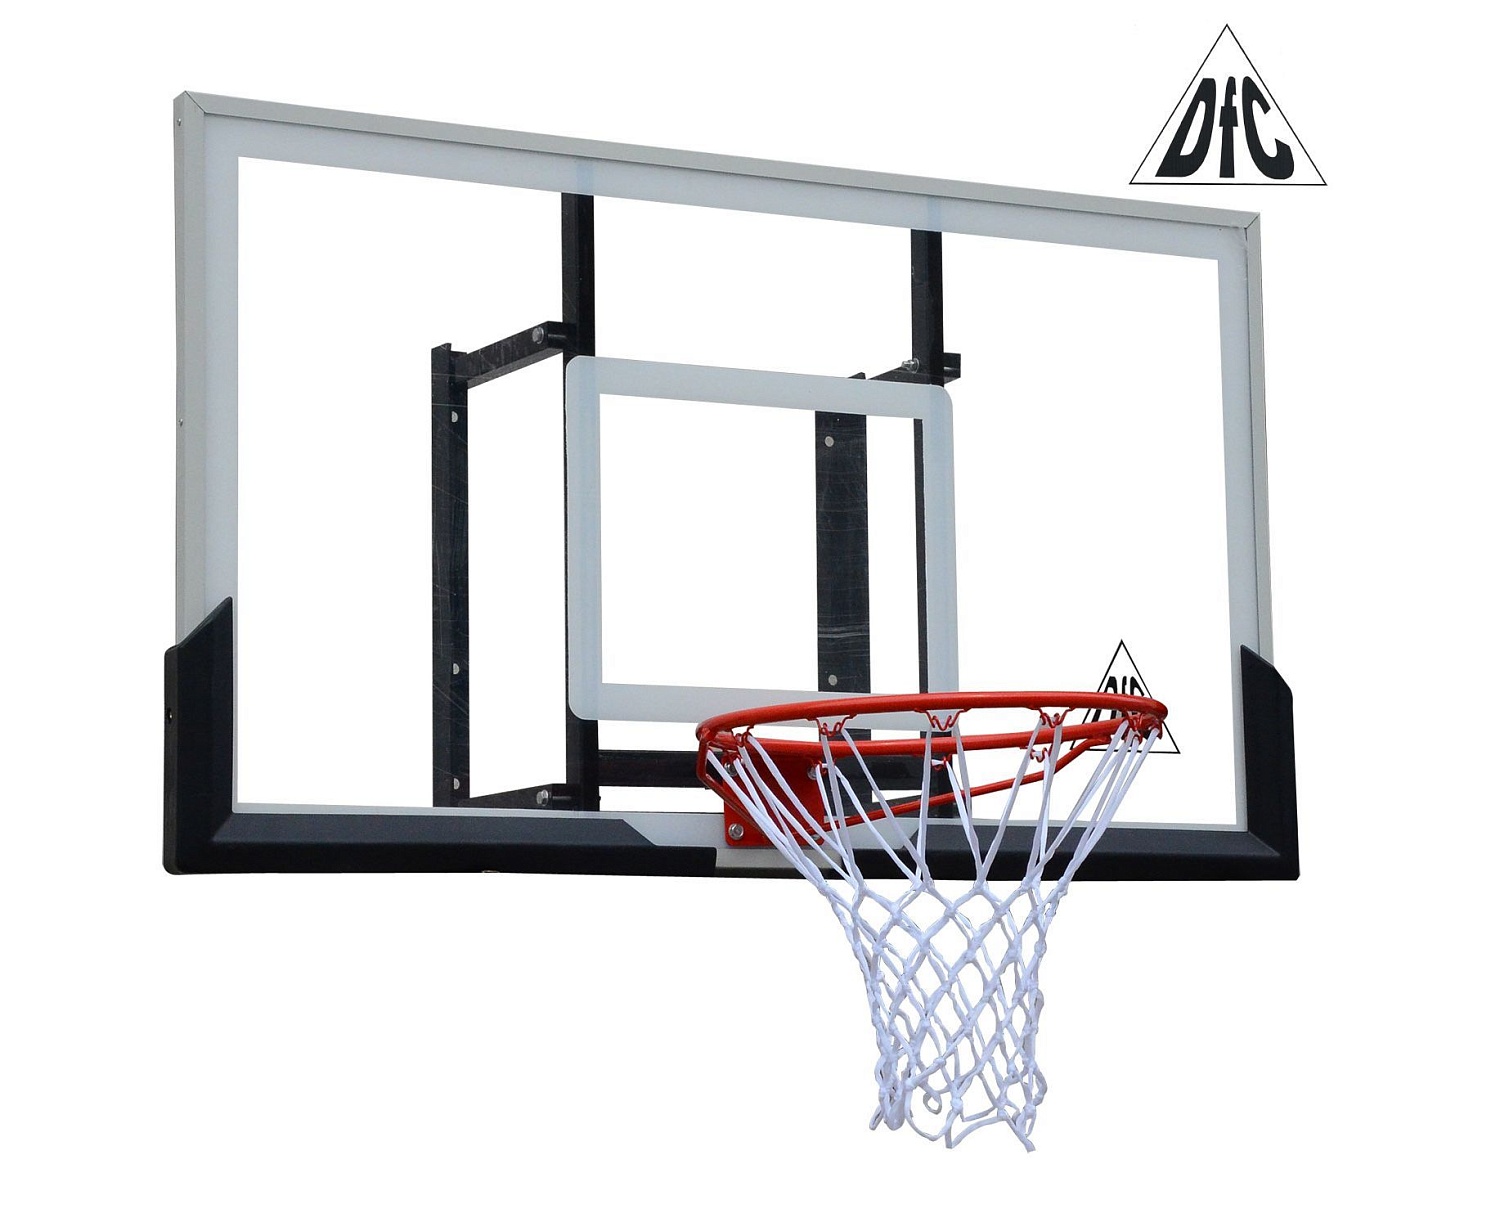 Баскетбольный щит DFC BOARD50A 127x80cm акрил